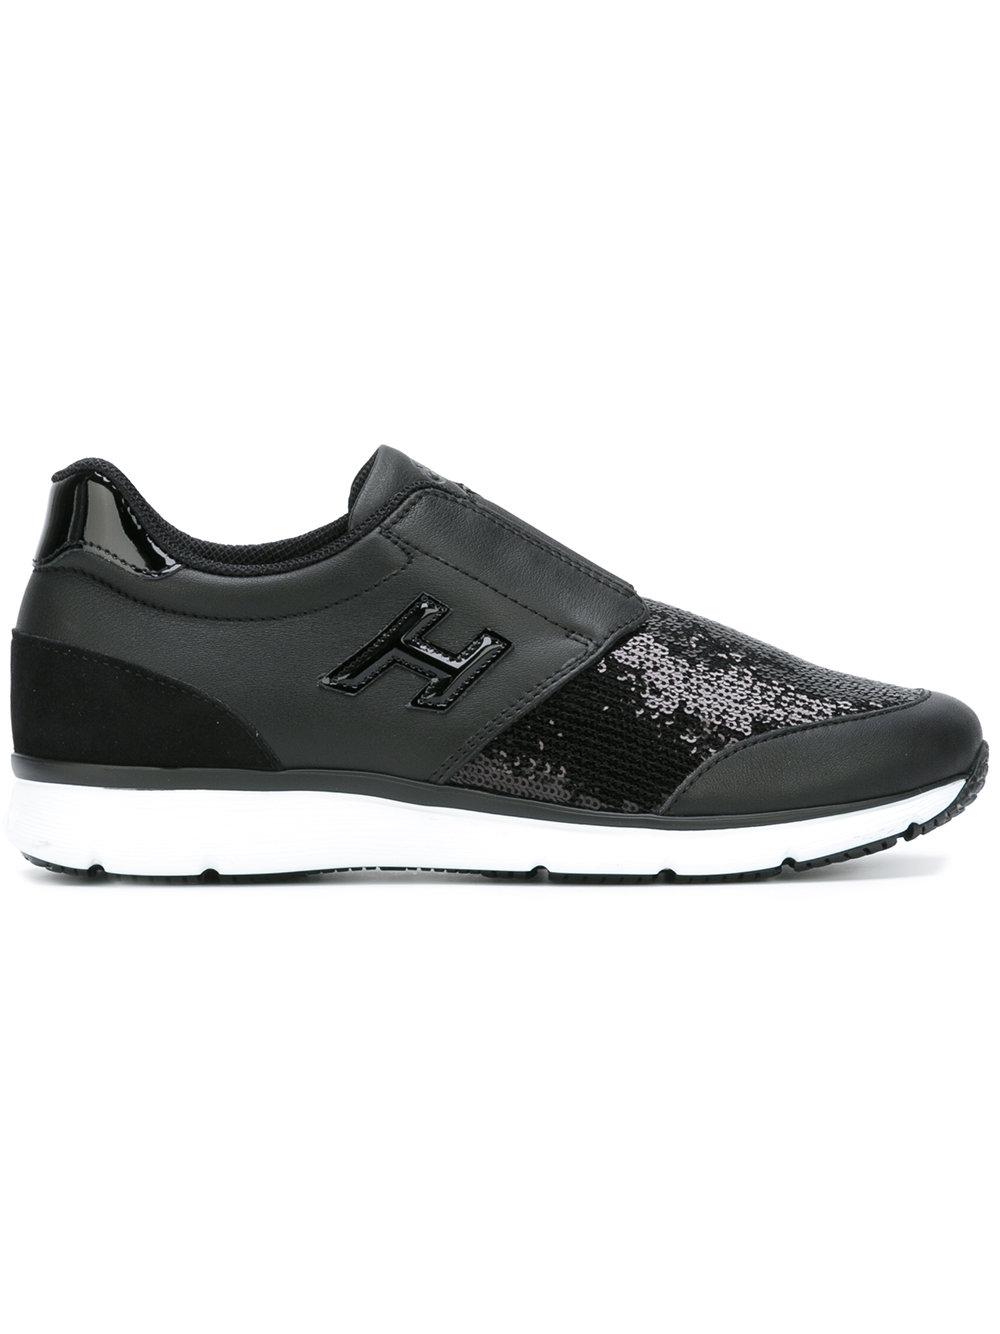 Hogan Sequin Slip-on Sneakers in Black | Lyst